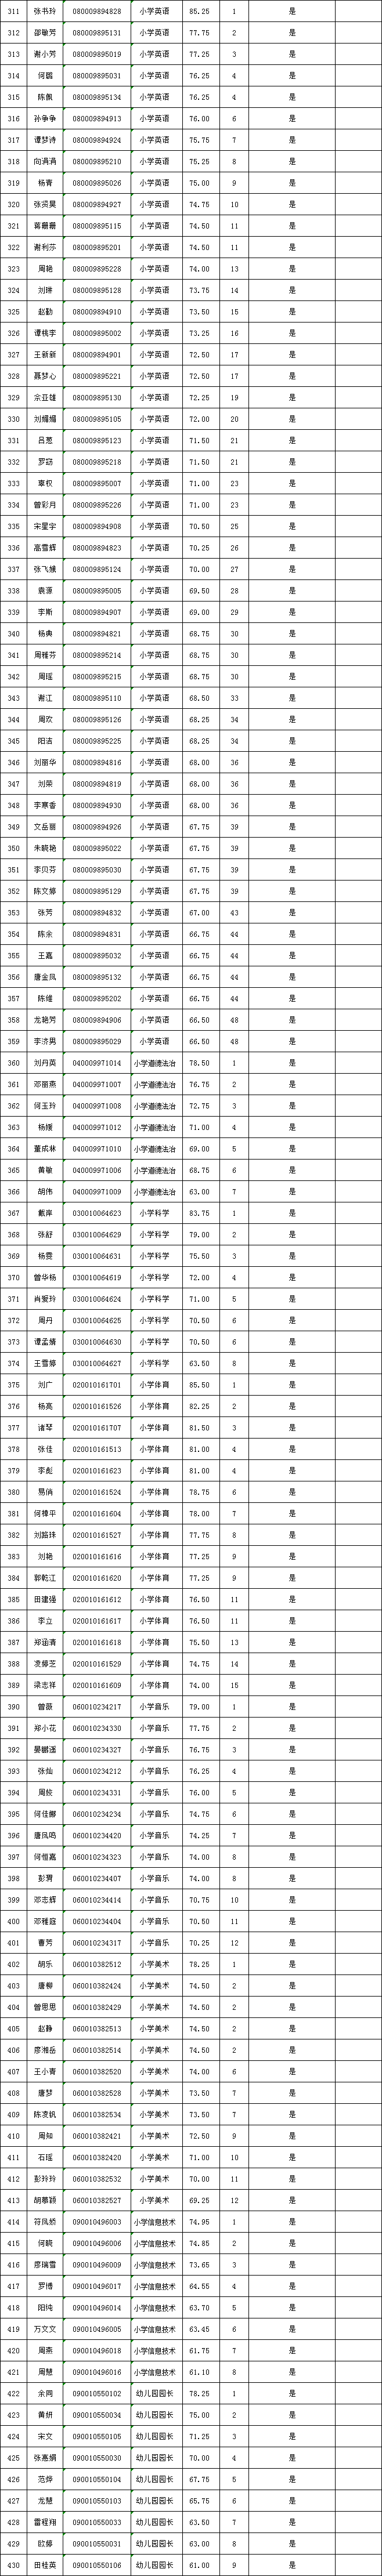 2022年长沙县公开招聘（选调）教师入围试教（面试、专业技能测试）人员名单公示(图2)